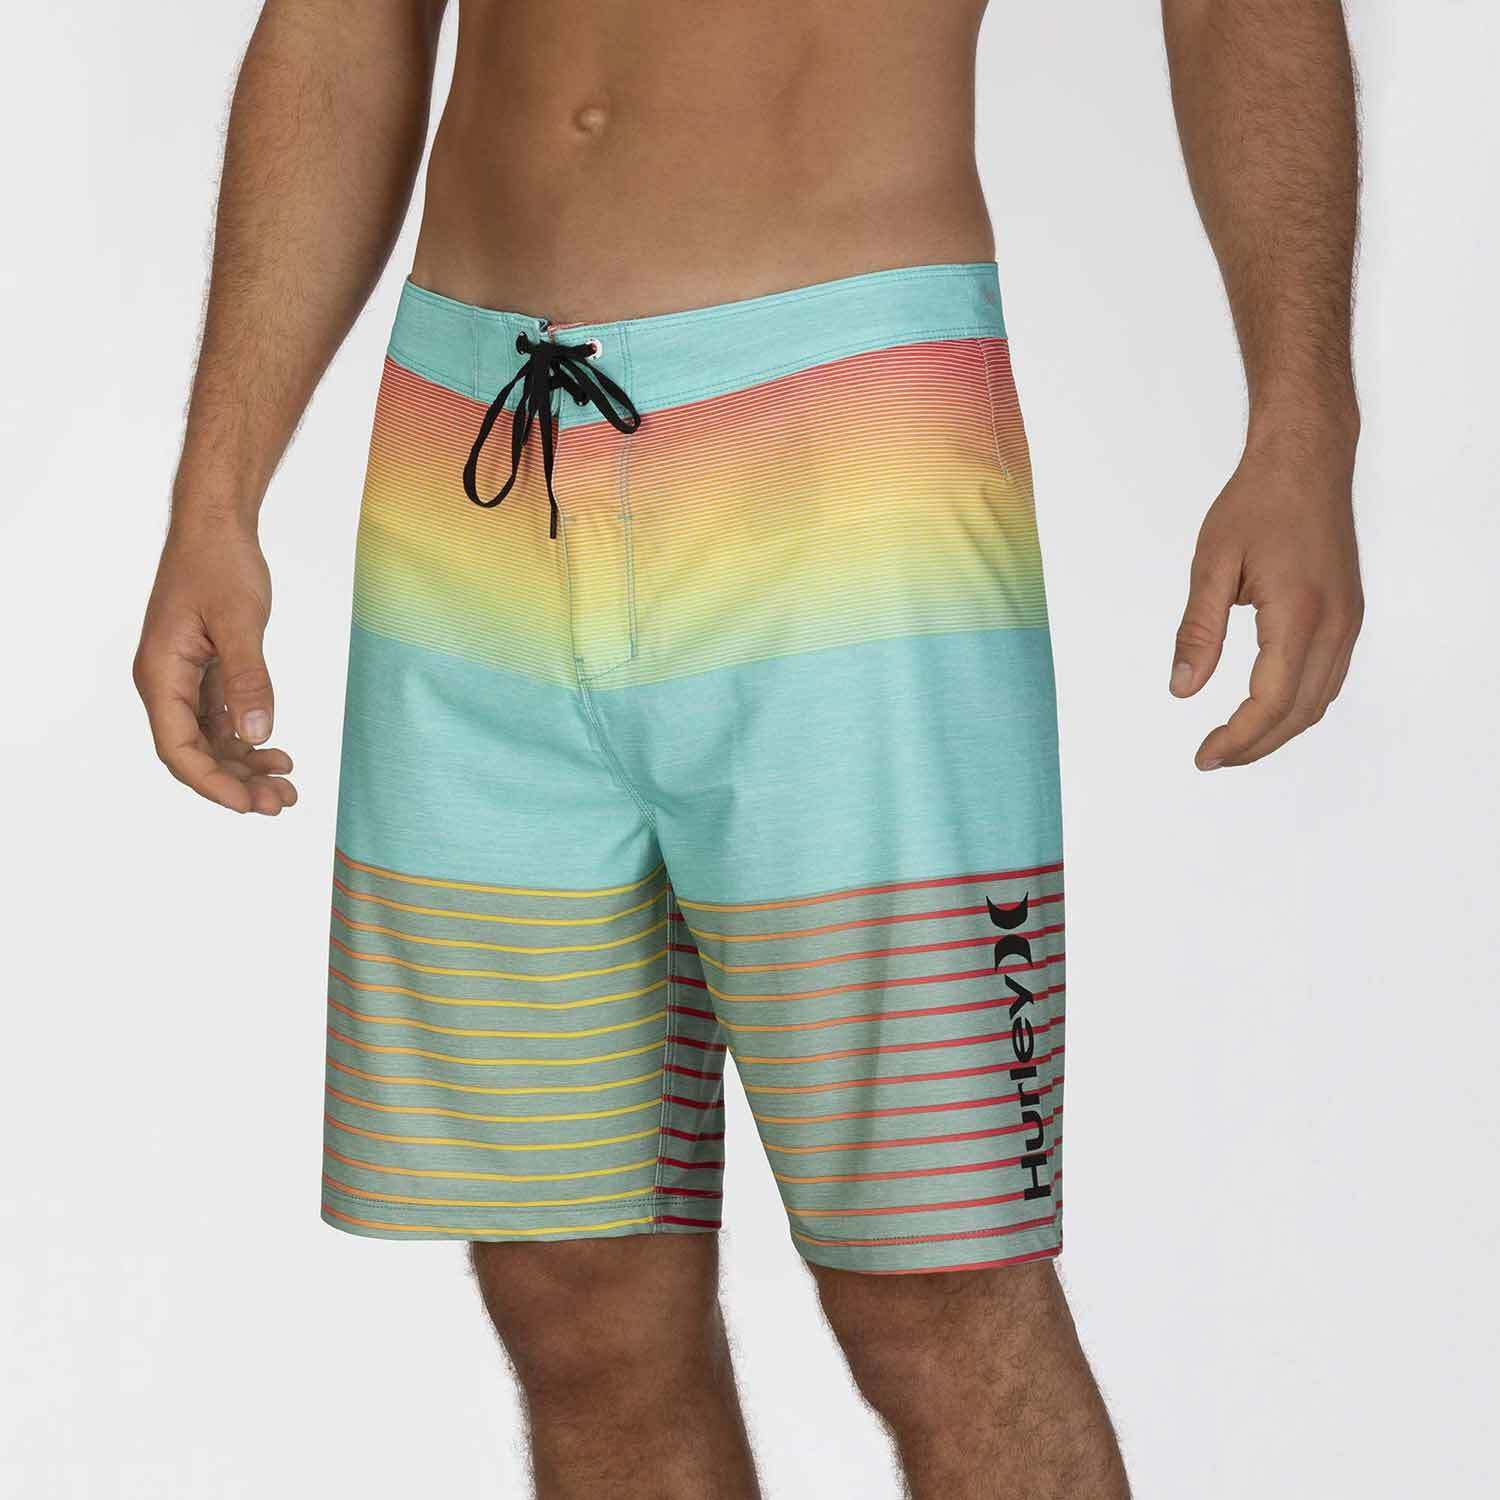 36" H Phantom Swimwear Mens Bermuda Shorts Spandex Beach Pants Surf Board Shorts 